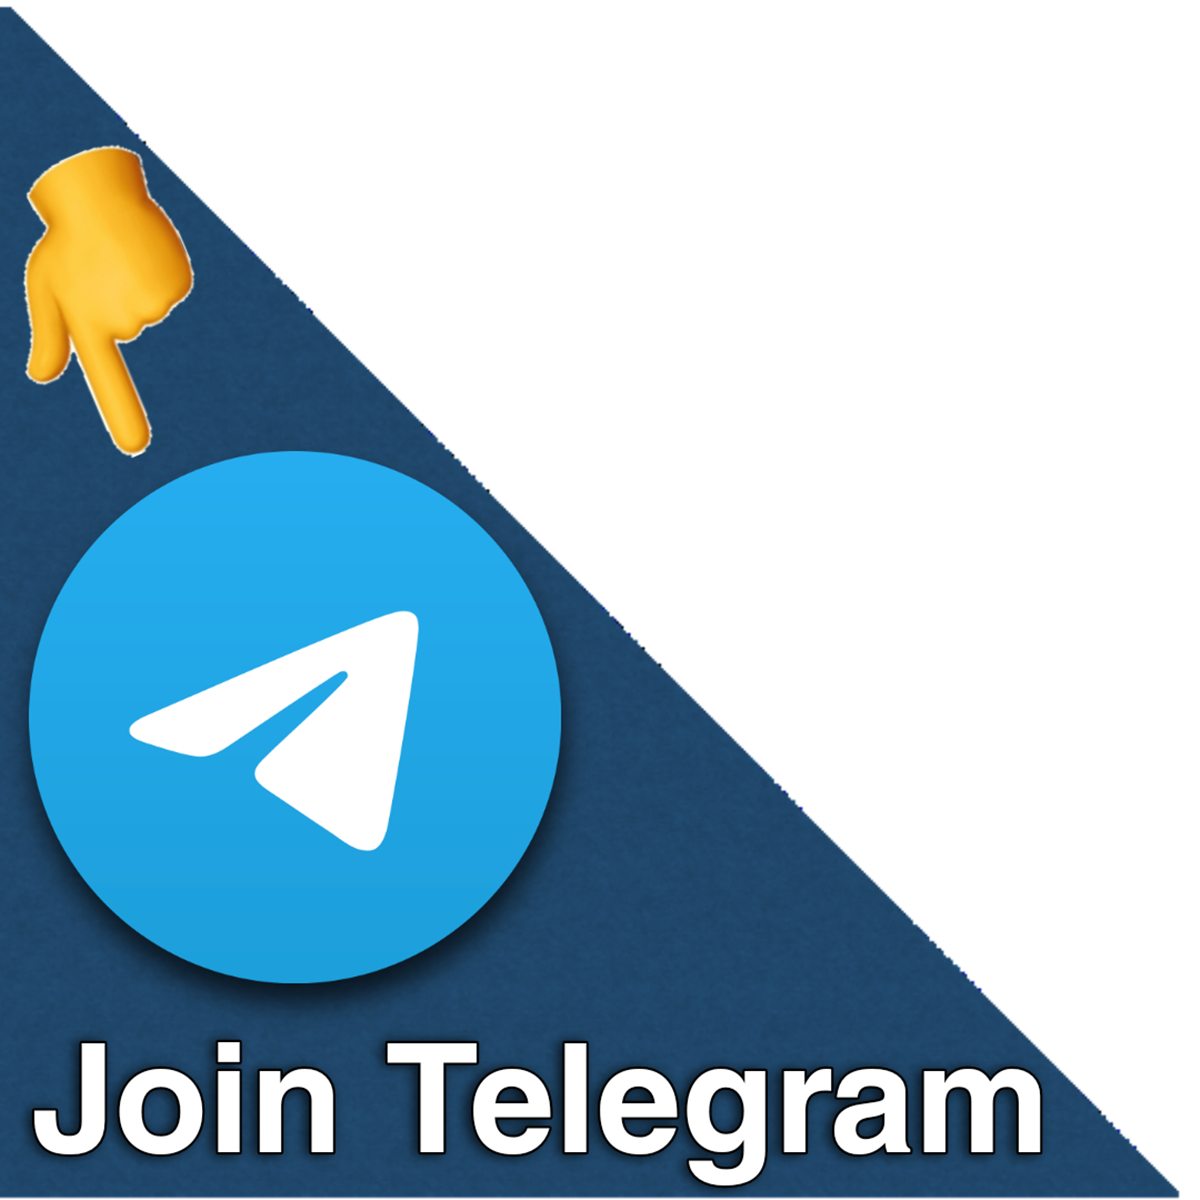 OSS Join telegram